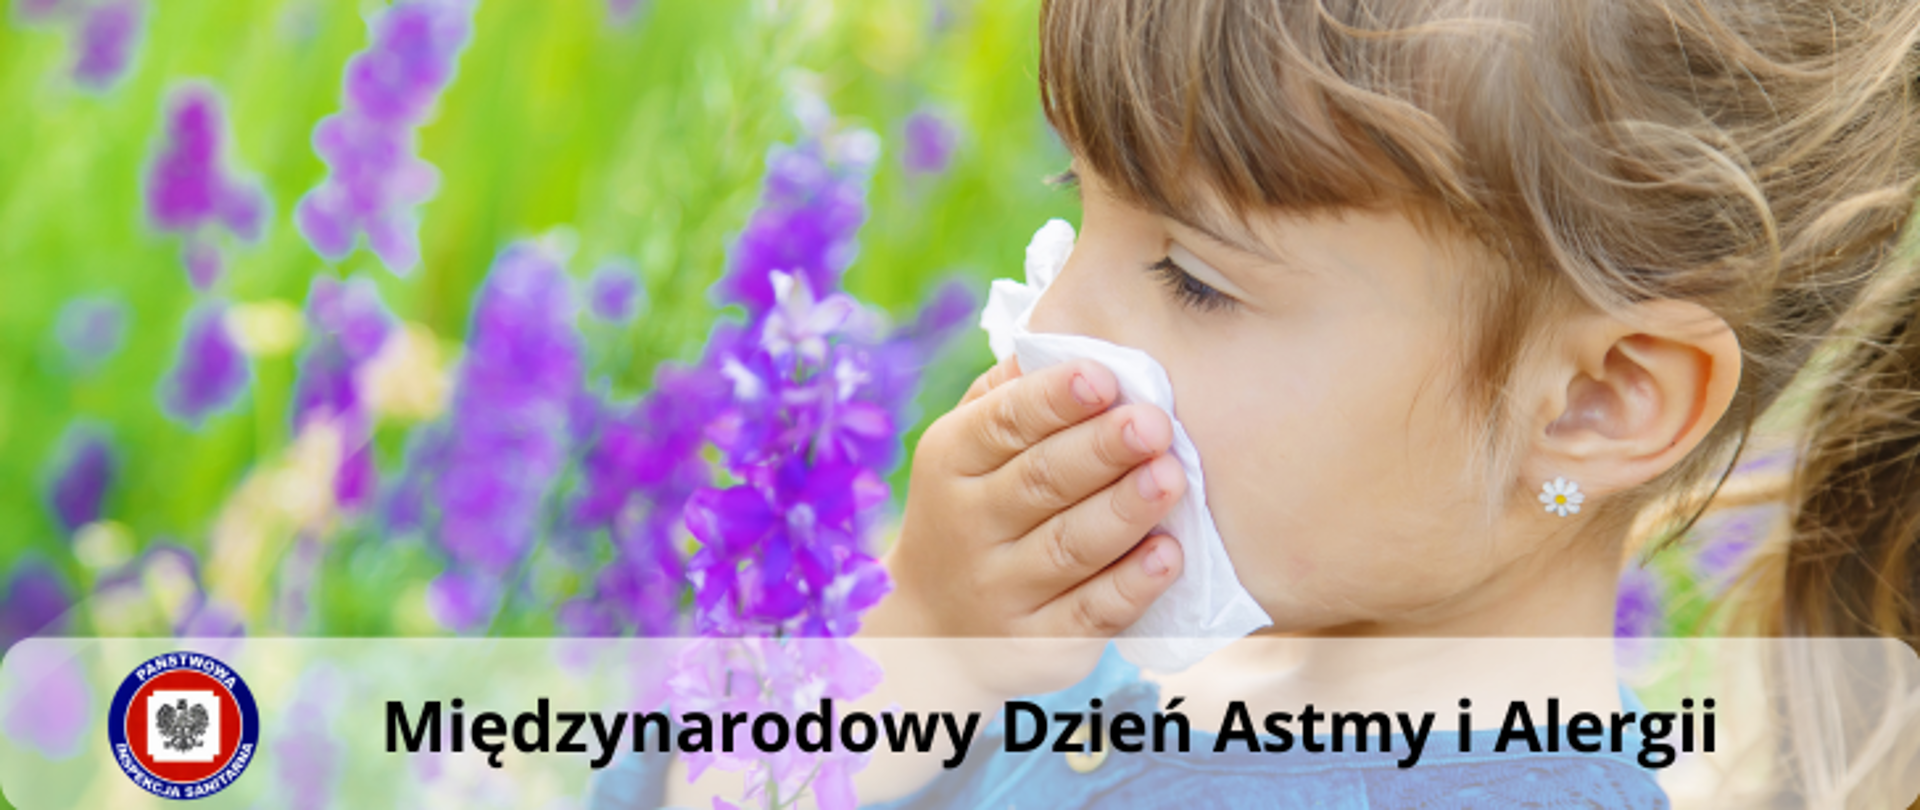 Dziecko z chusteczką przy twarzy na tle kwietnej łąki. Na dole zdjęcia napis Międzynarodowy Dzień Astmy i Alergii